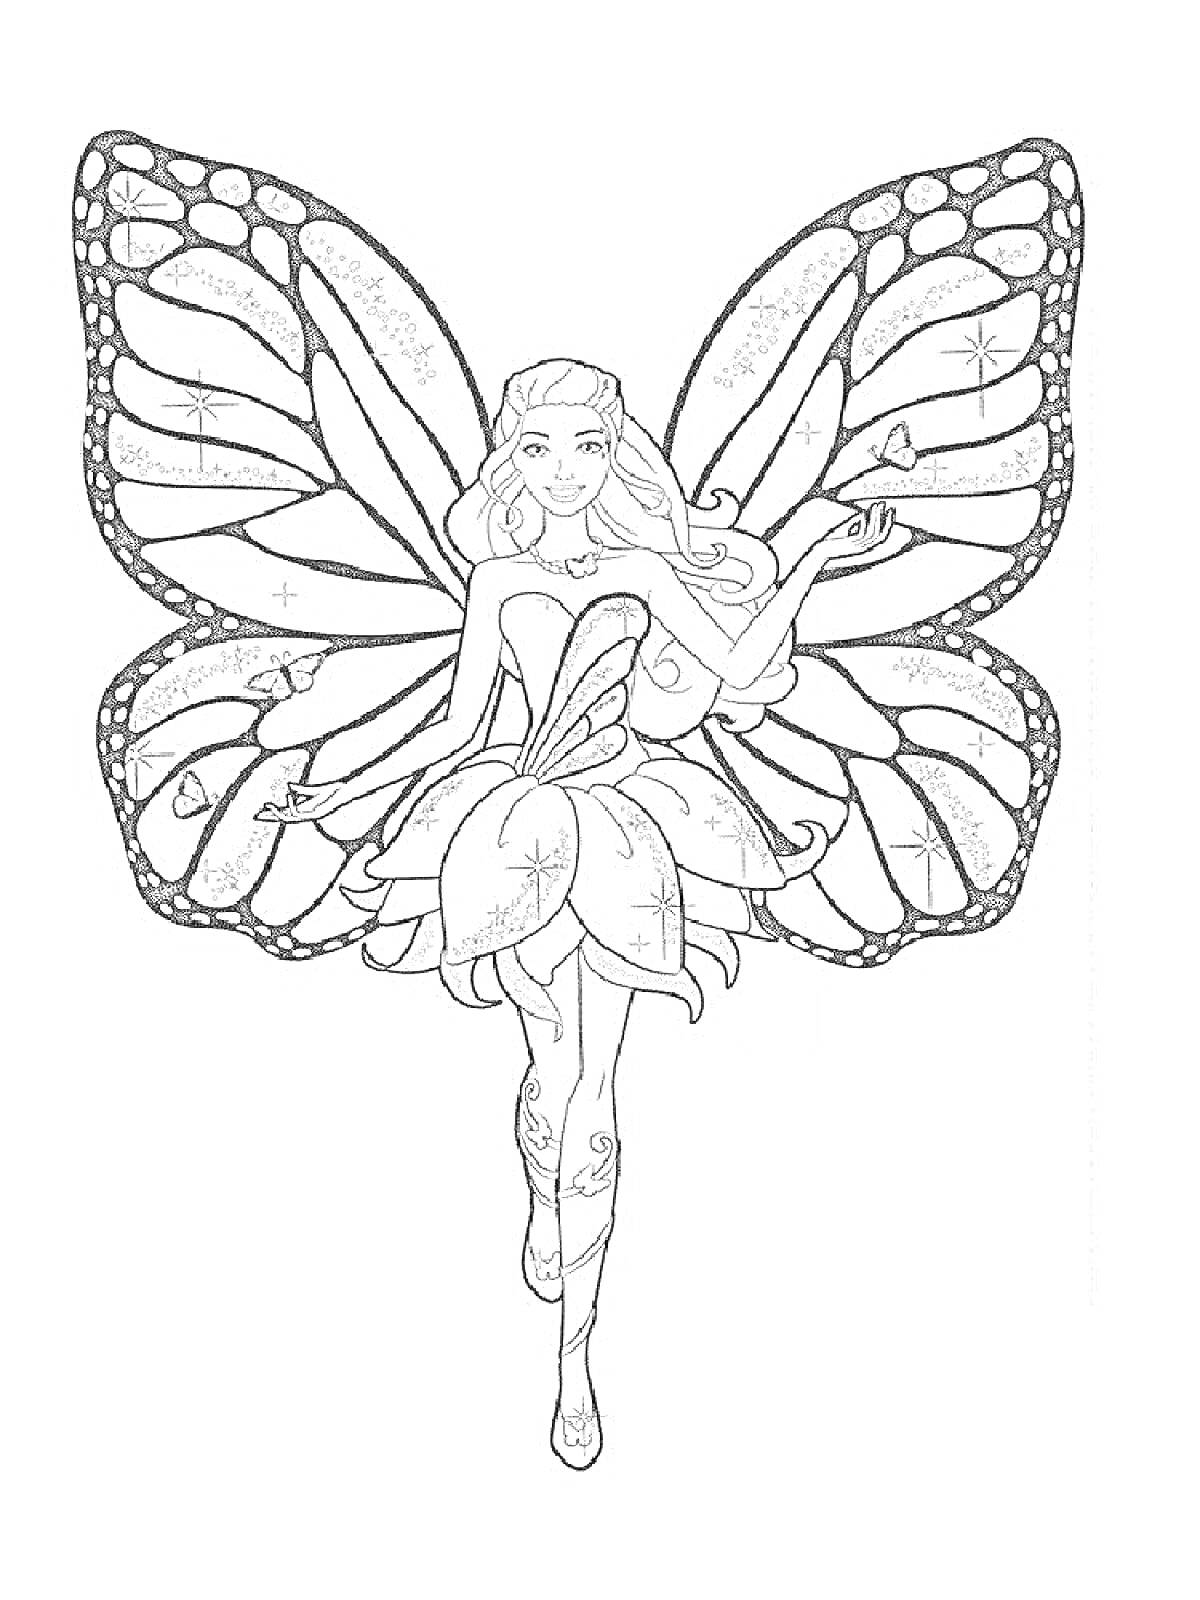 Раскраска Барби с крыльями феи, в платье из лепестков, стоящая на одной ноге